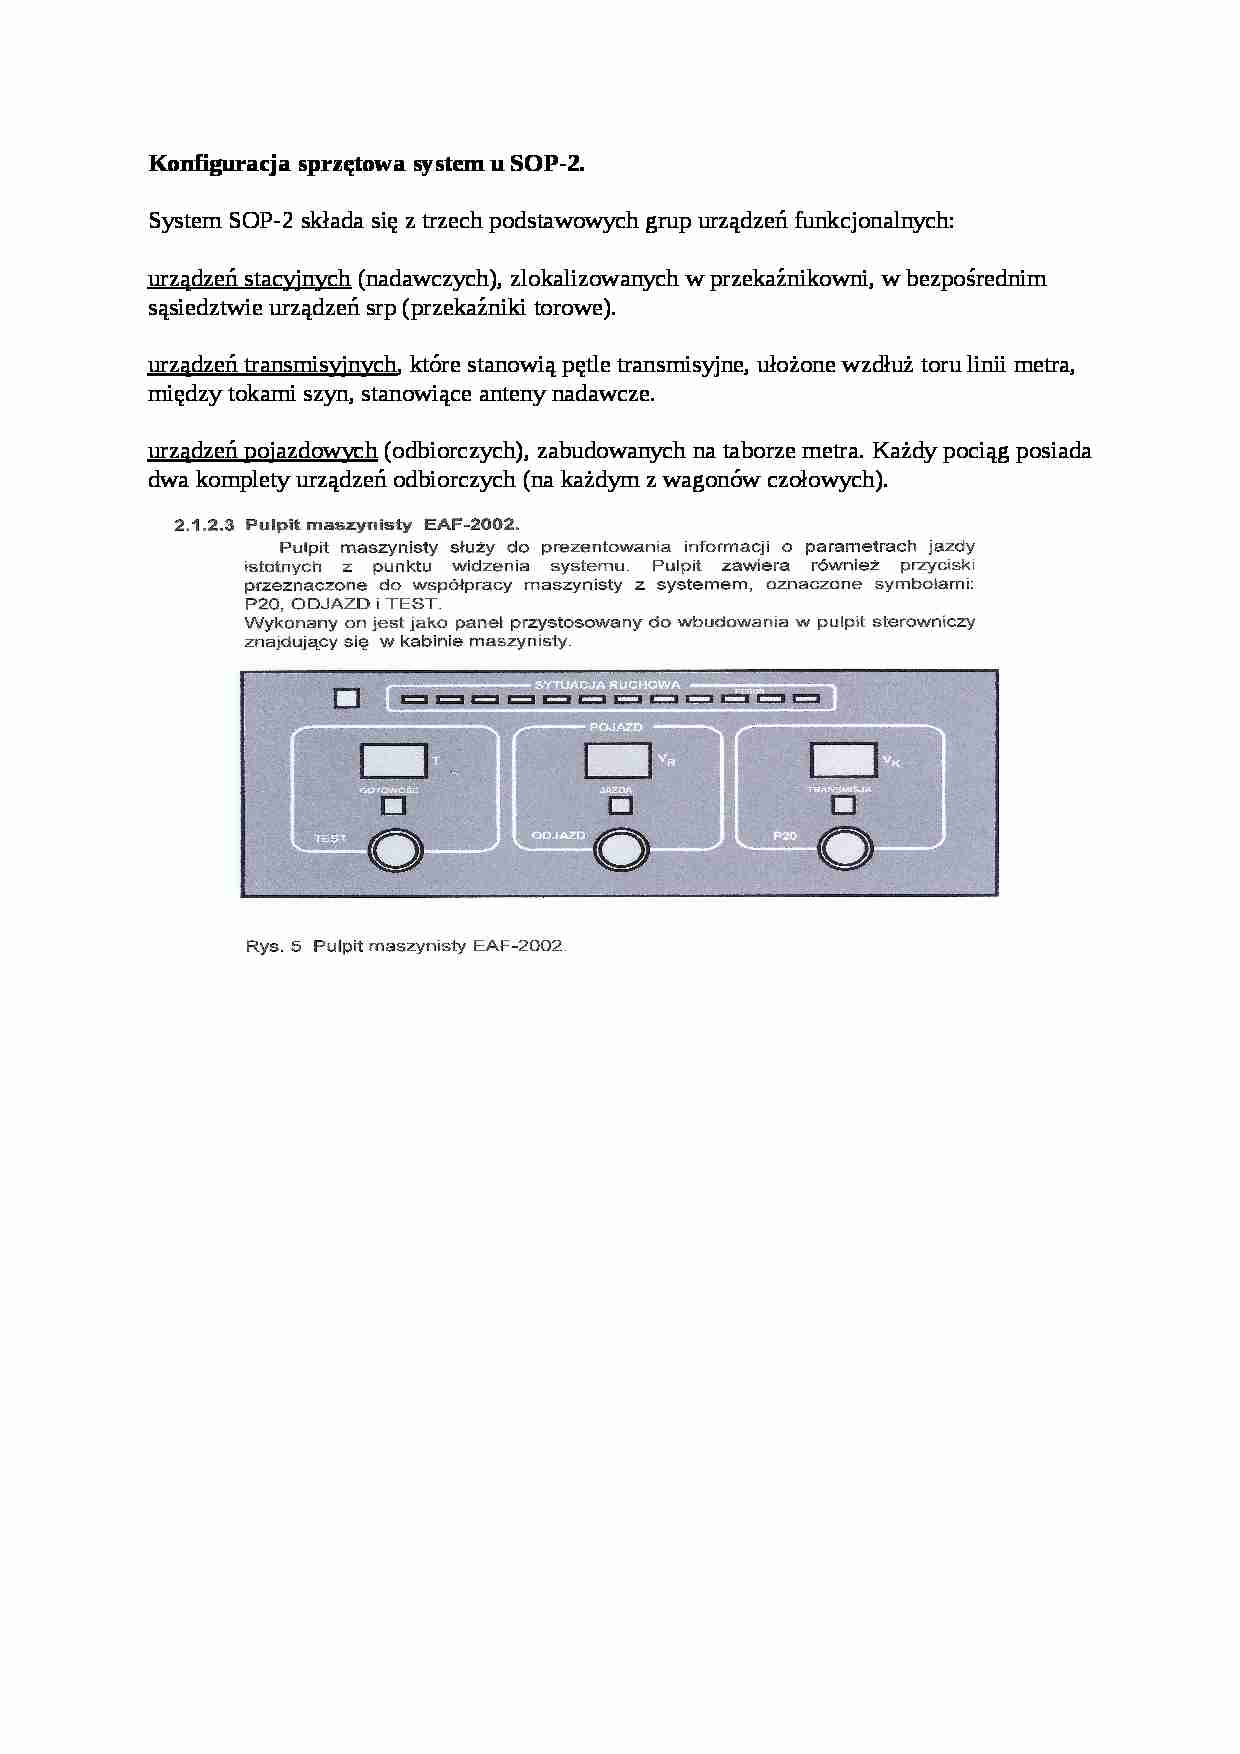 Konfiguracja sprzętowa system u SOP - opis - strona 1